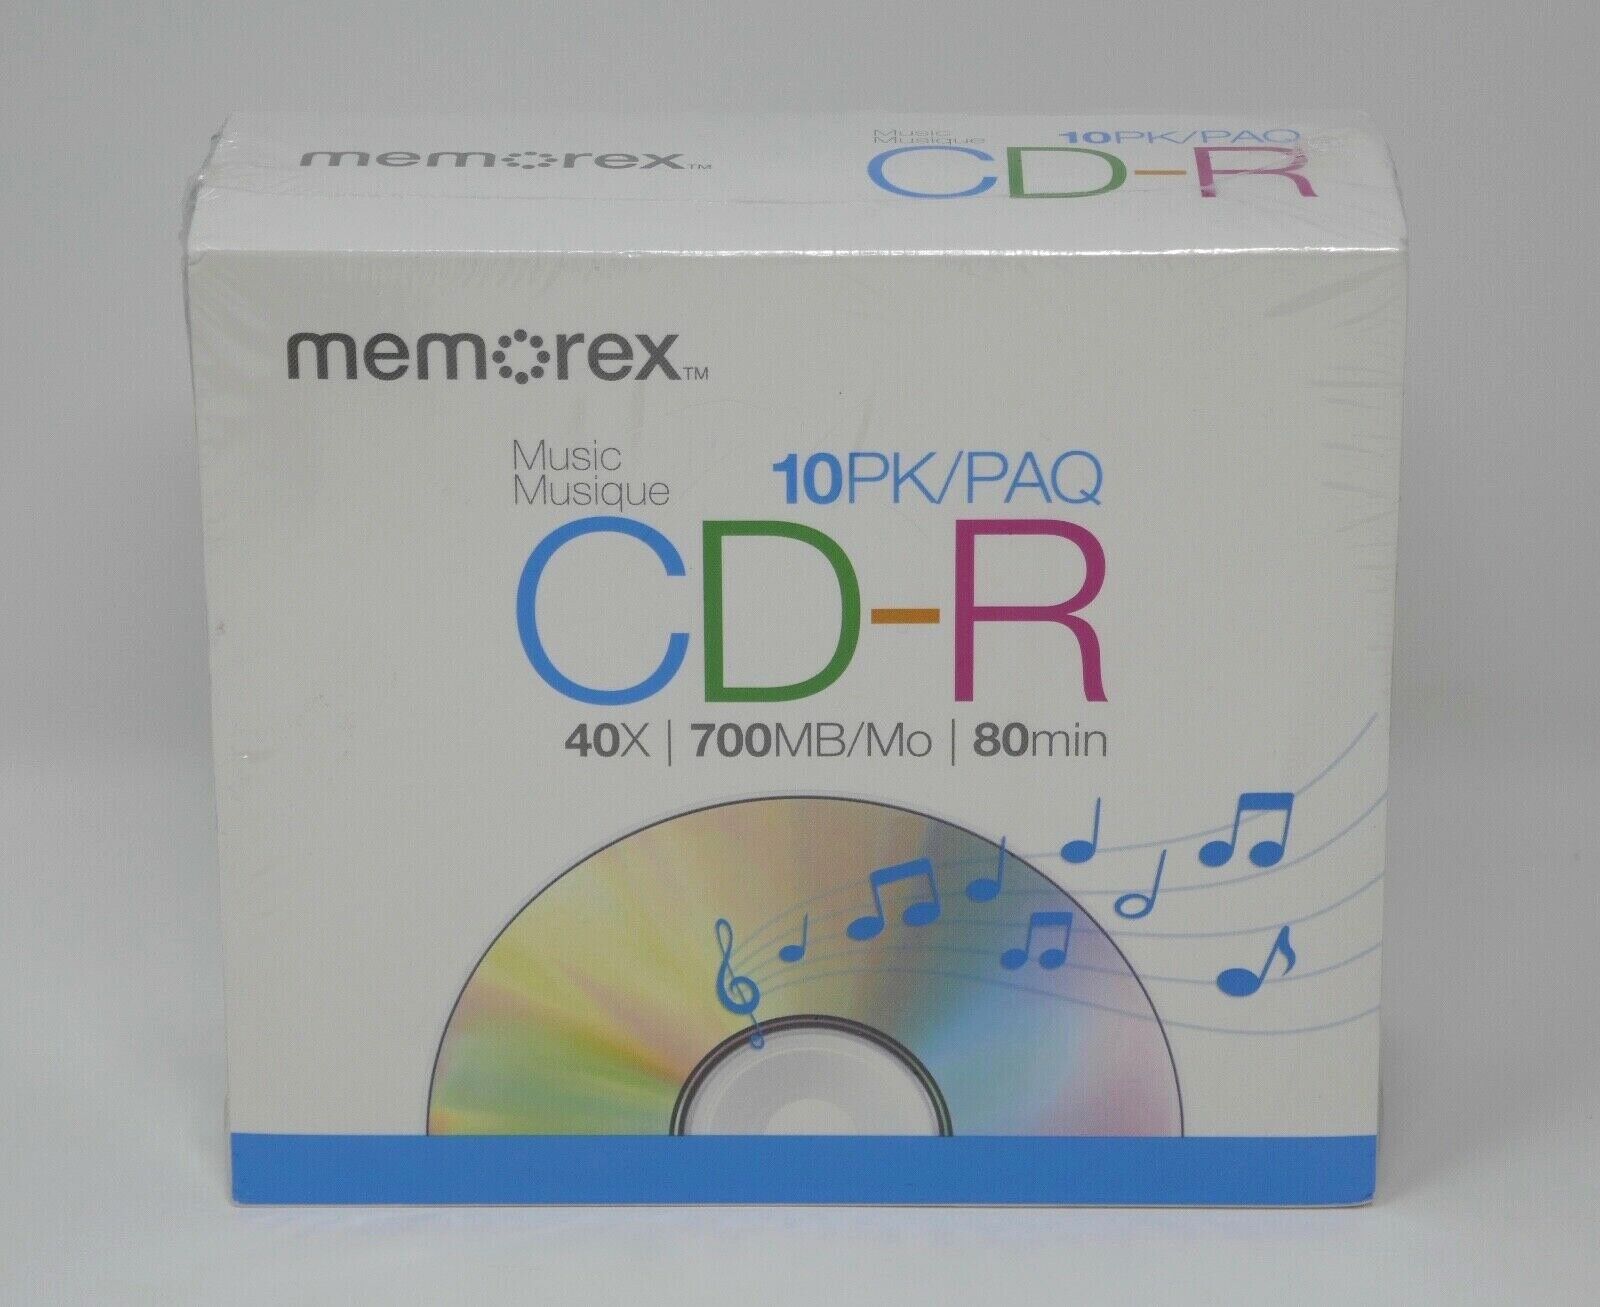 Memorex CD-R Music 10PK 40x 700MB/Mo 80min SEALED